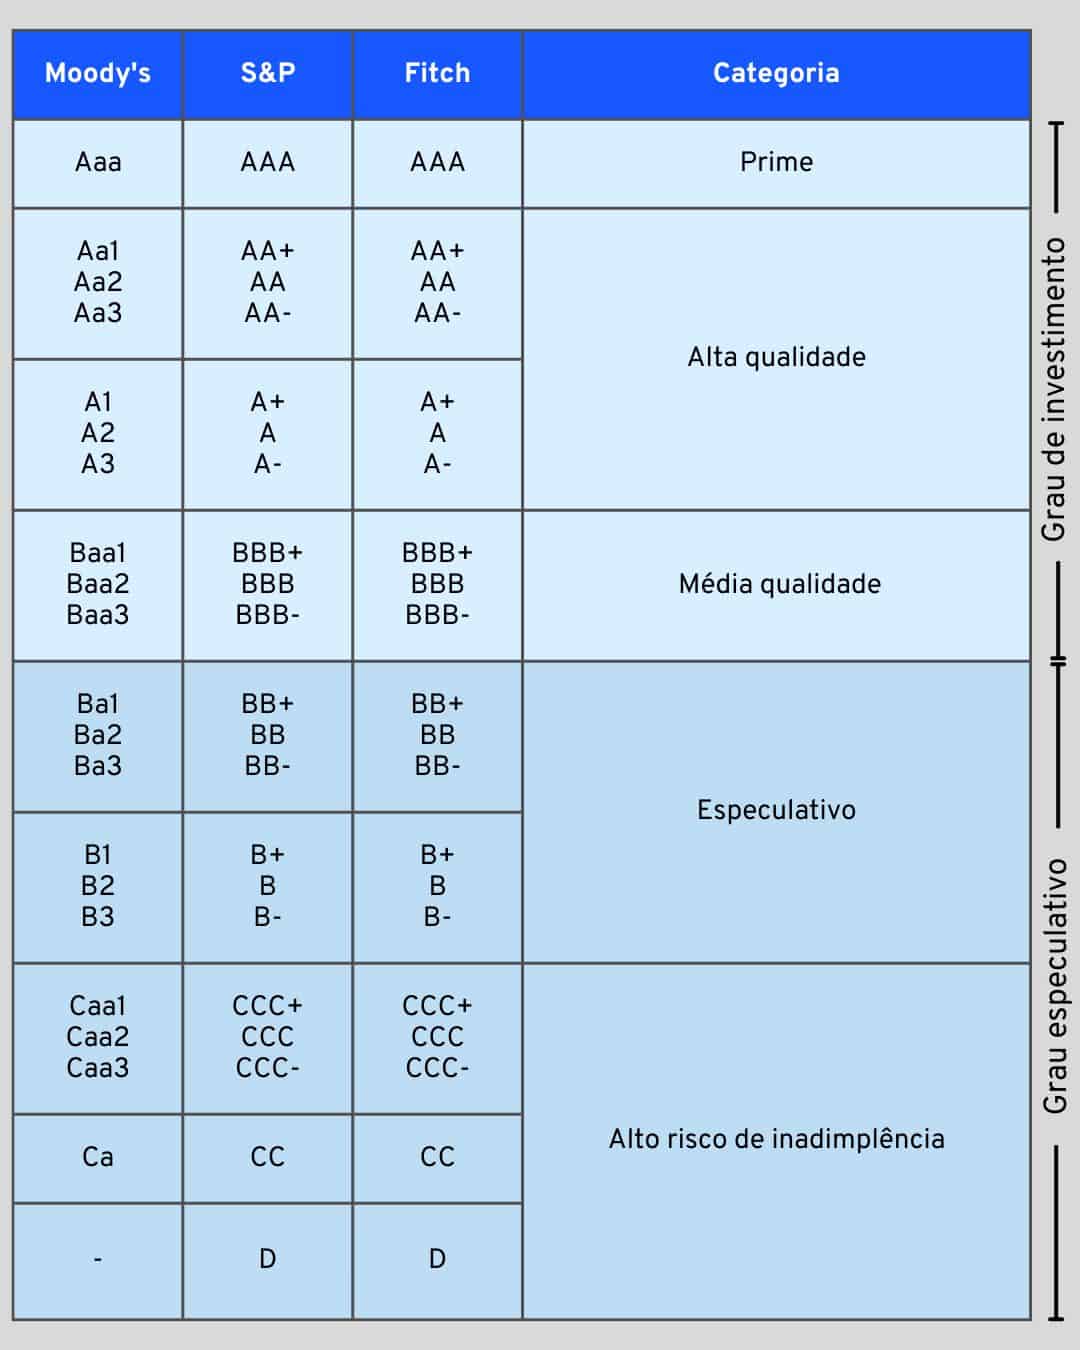 Tabela de classificação de risco/rating de instituições financeiras.